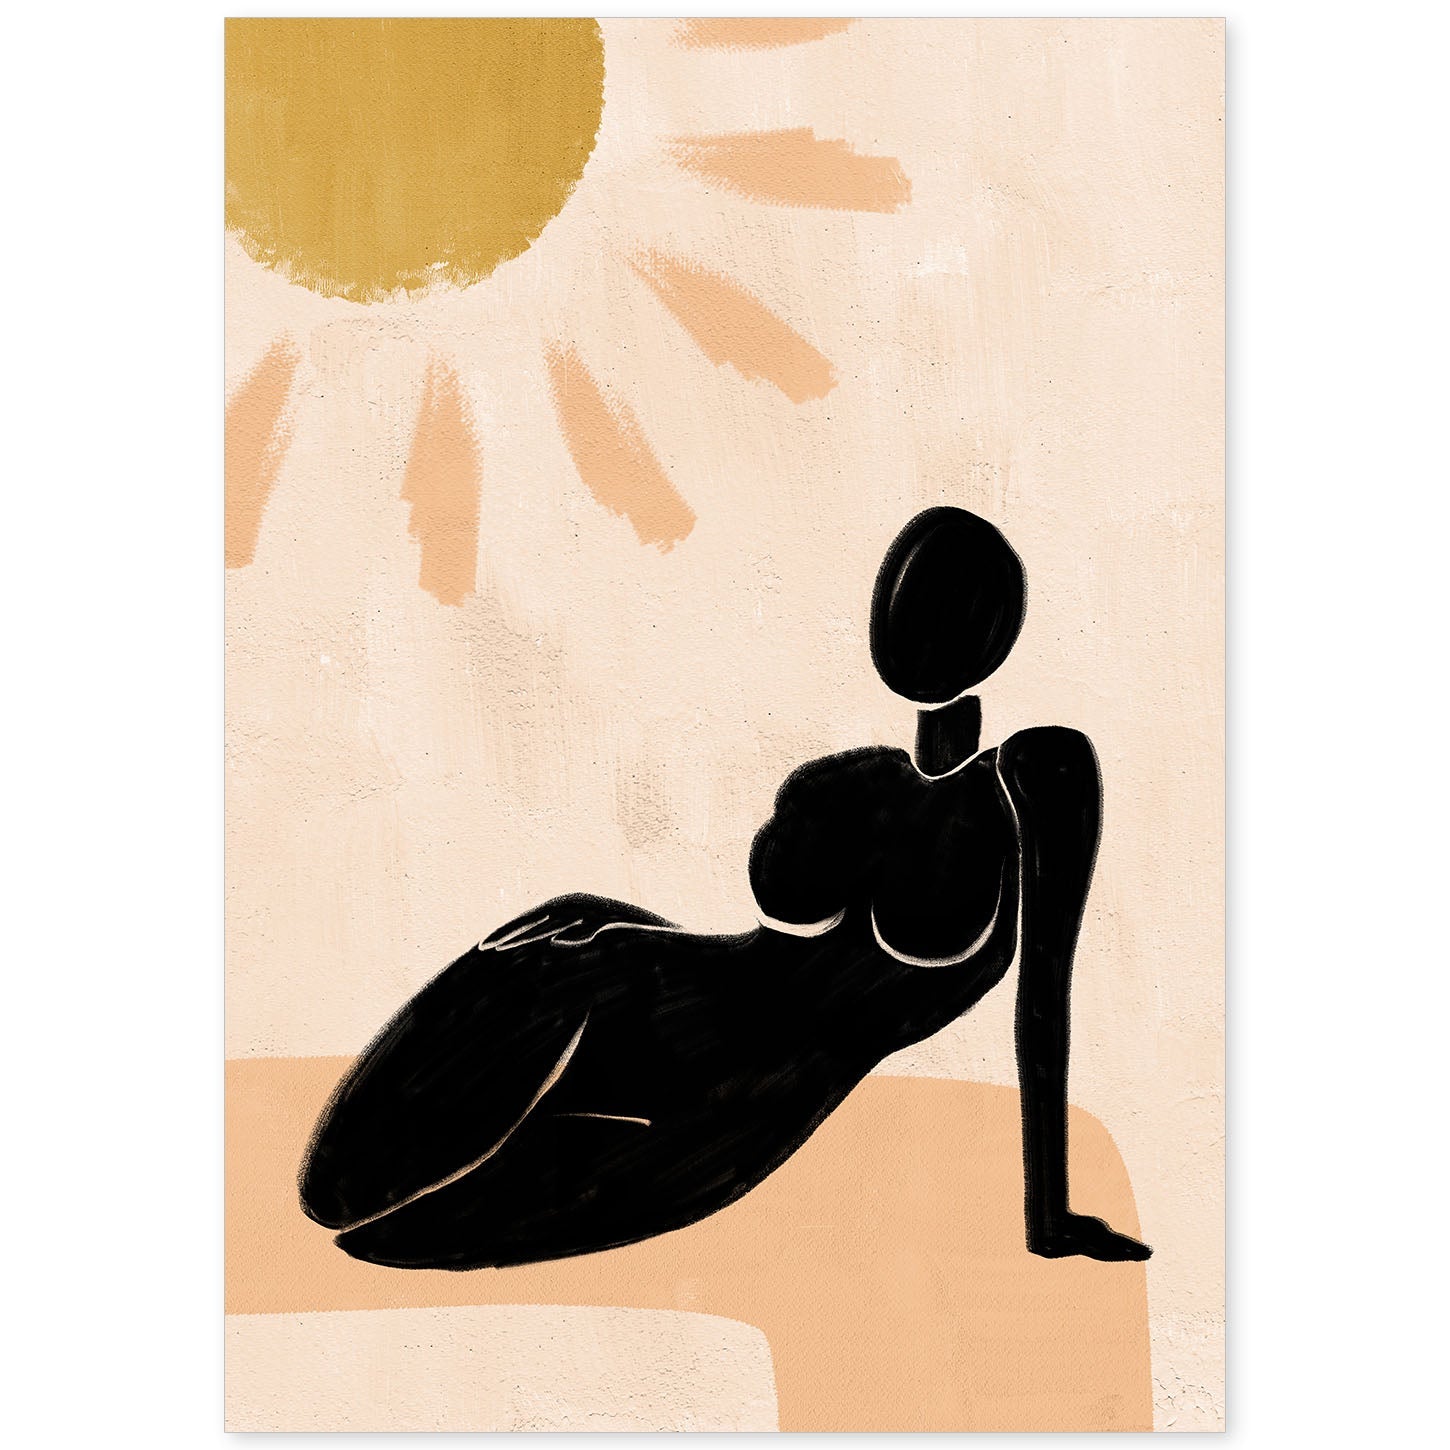 Poster con ilustracion de mujer. Dibujos con formas, caras, cuerpos y gestos de mujeres. 'Mujeres 2'.-Artwork-Nacnic-A4-Sin marco-Nacnic Estudio SL